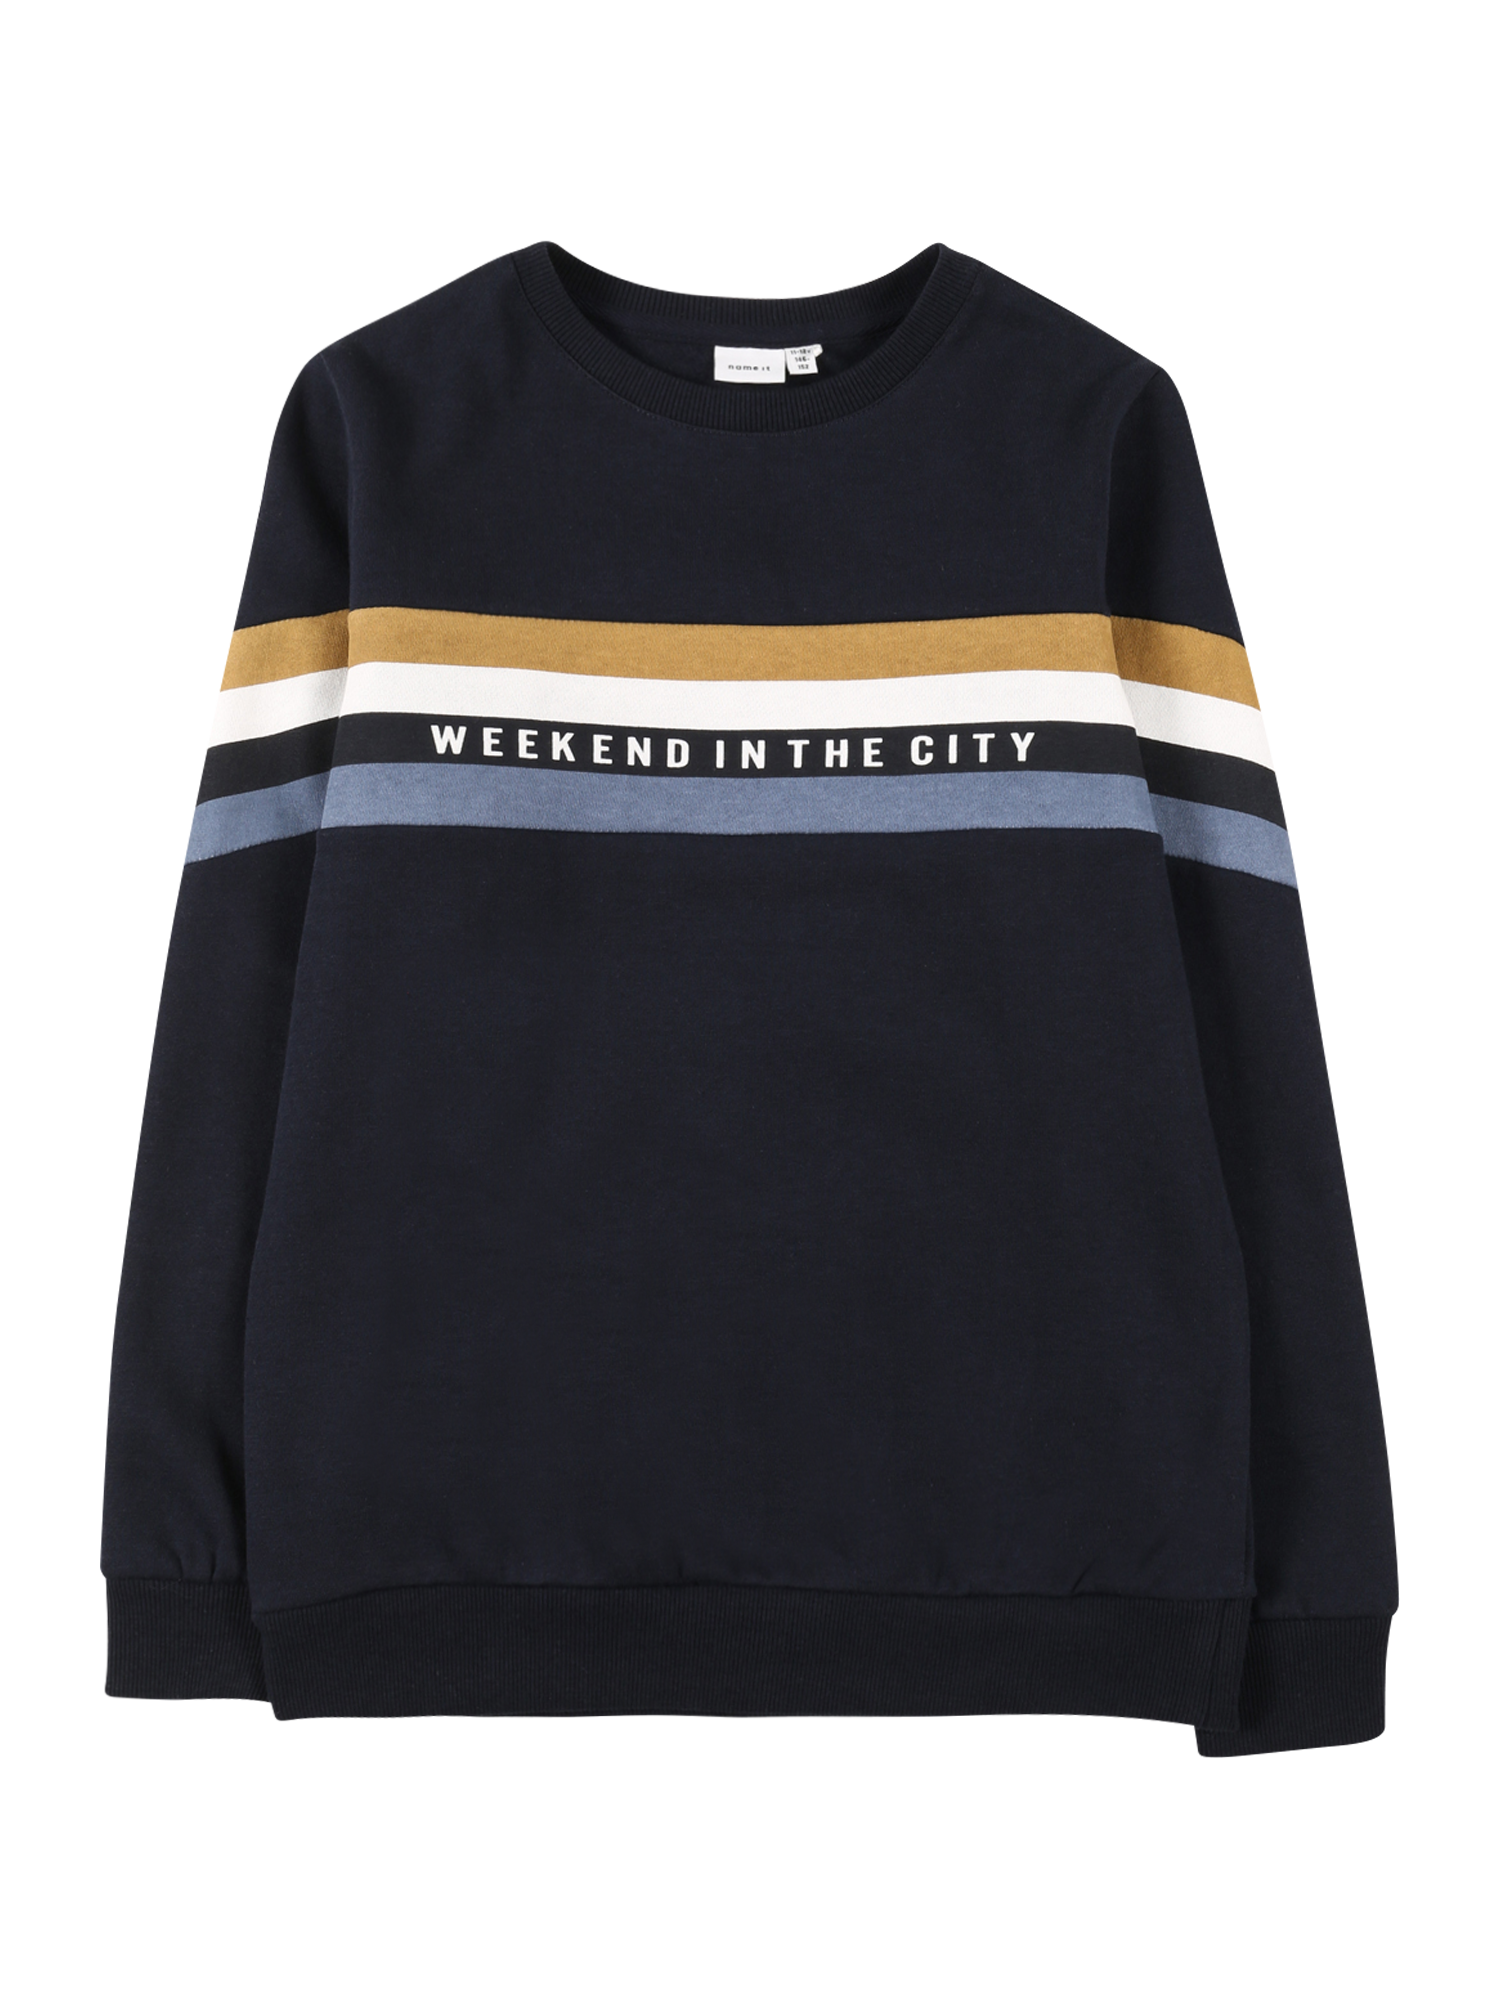 NAME IT Sweter w kolorze Granatowy, Błękitnym 